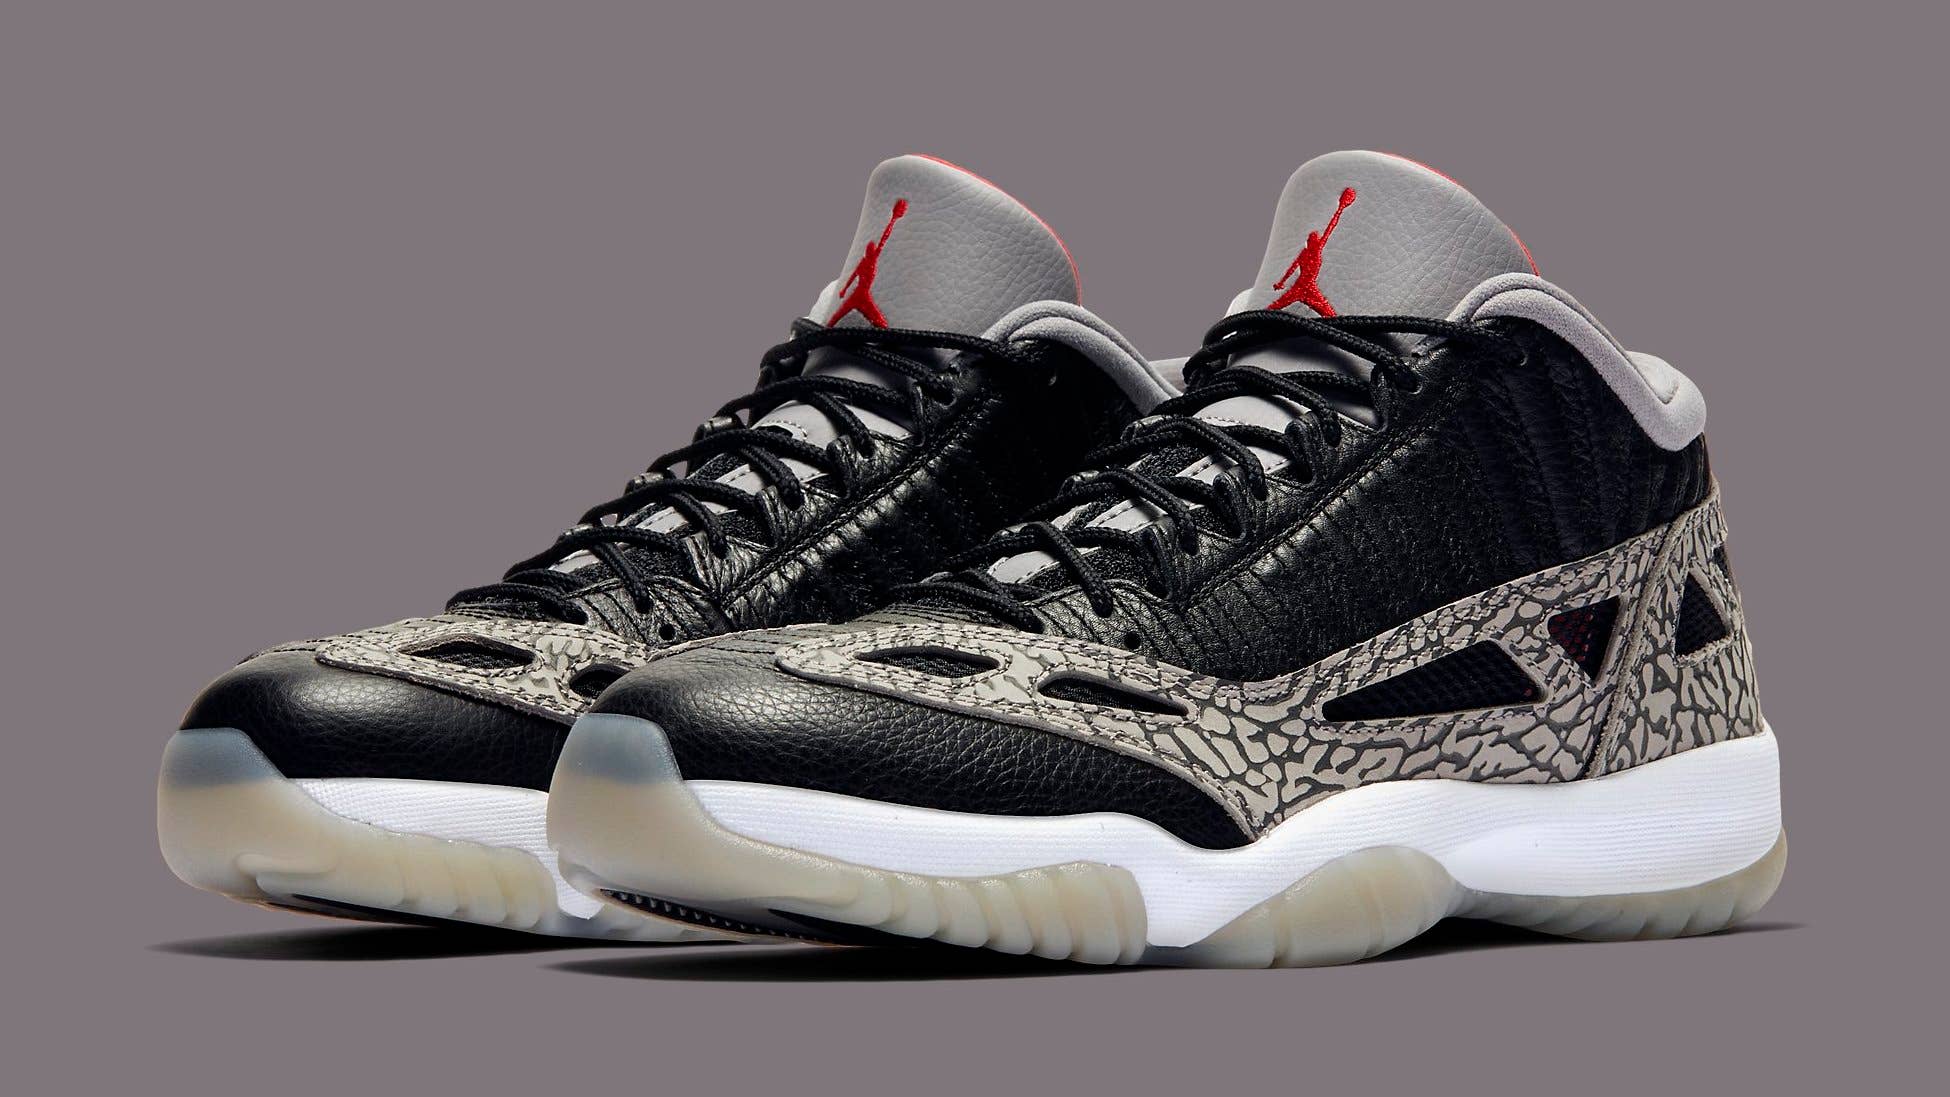 Air Jordan 11 Low: Nike Air Jordan 11 Low IE Black/White shoes